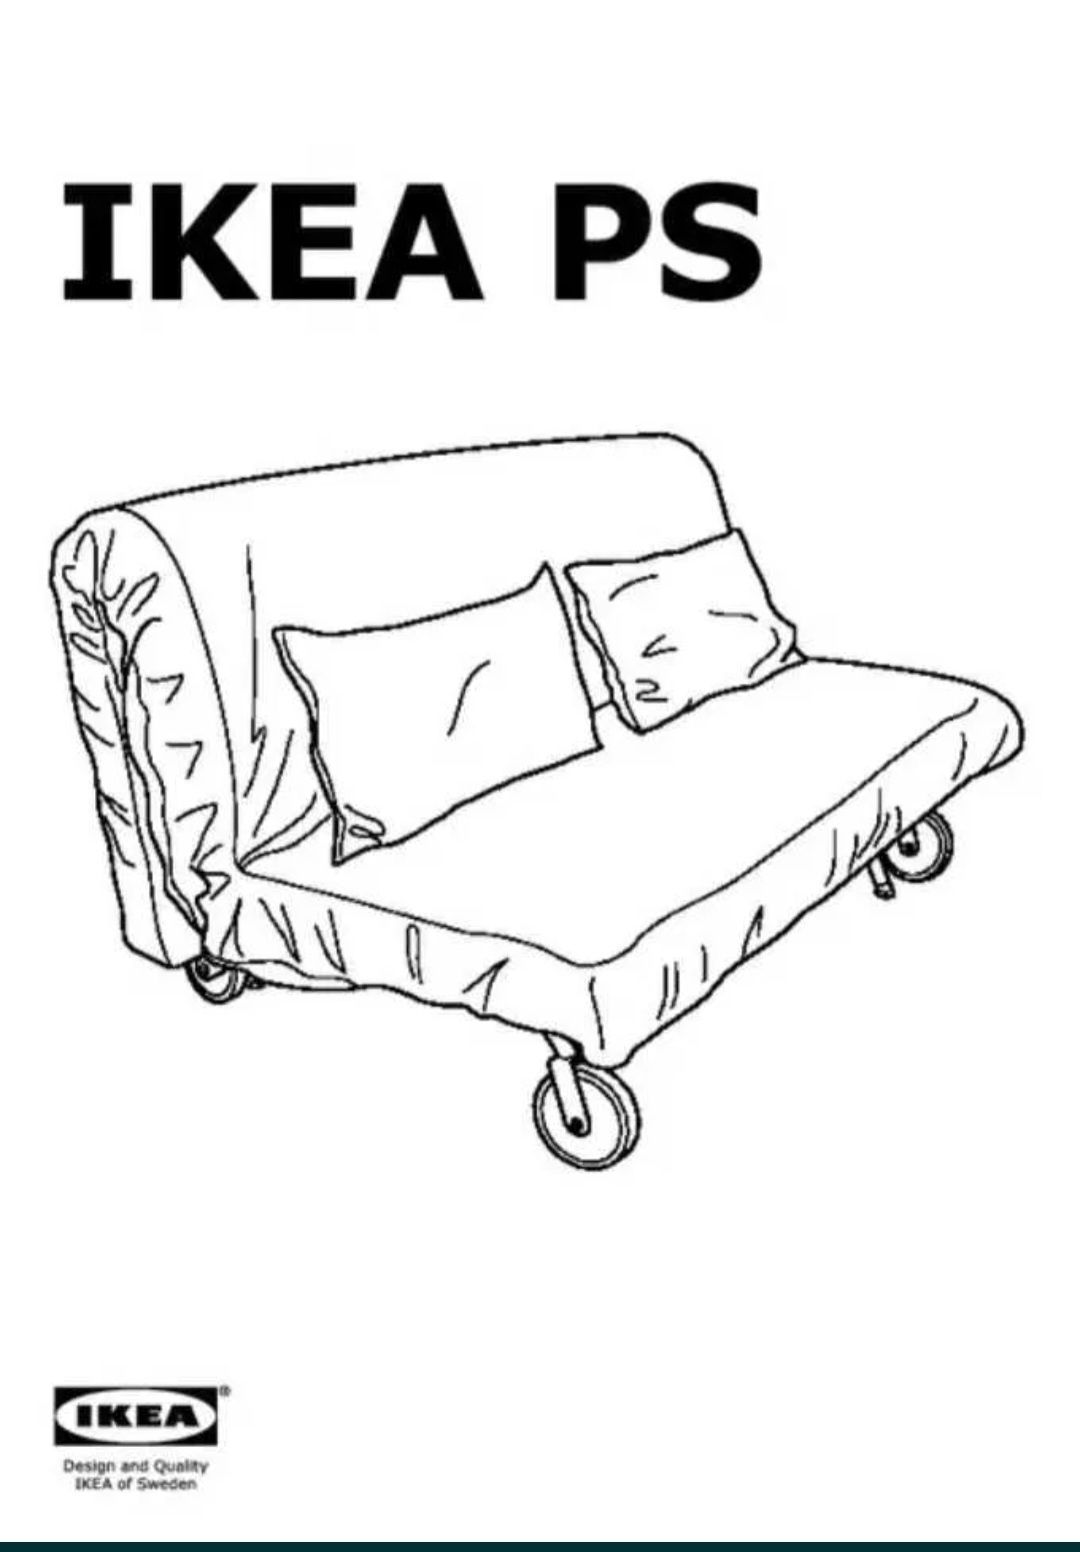 Vende-se um sofá de dois lugares do IKEA LOVAS PS